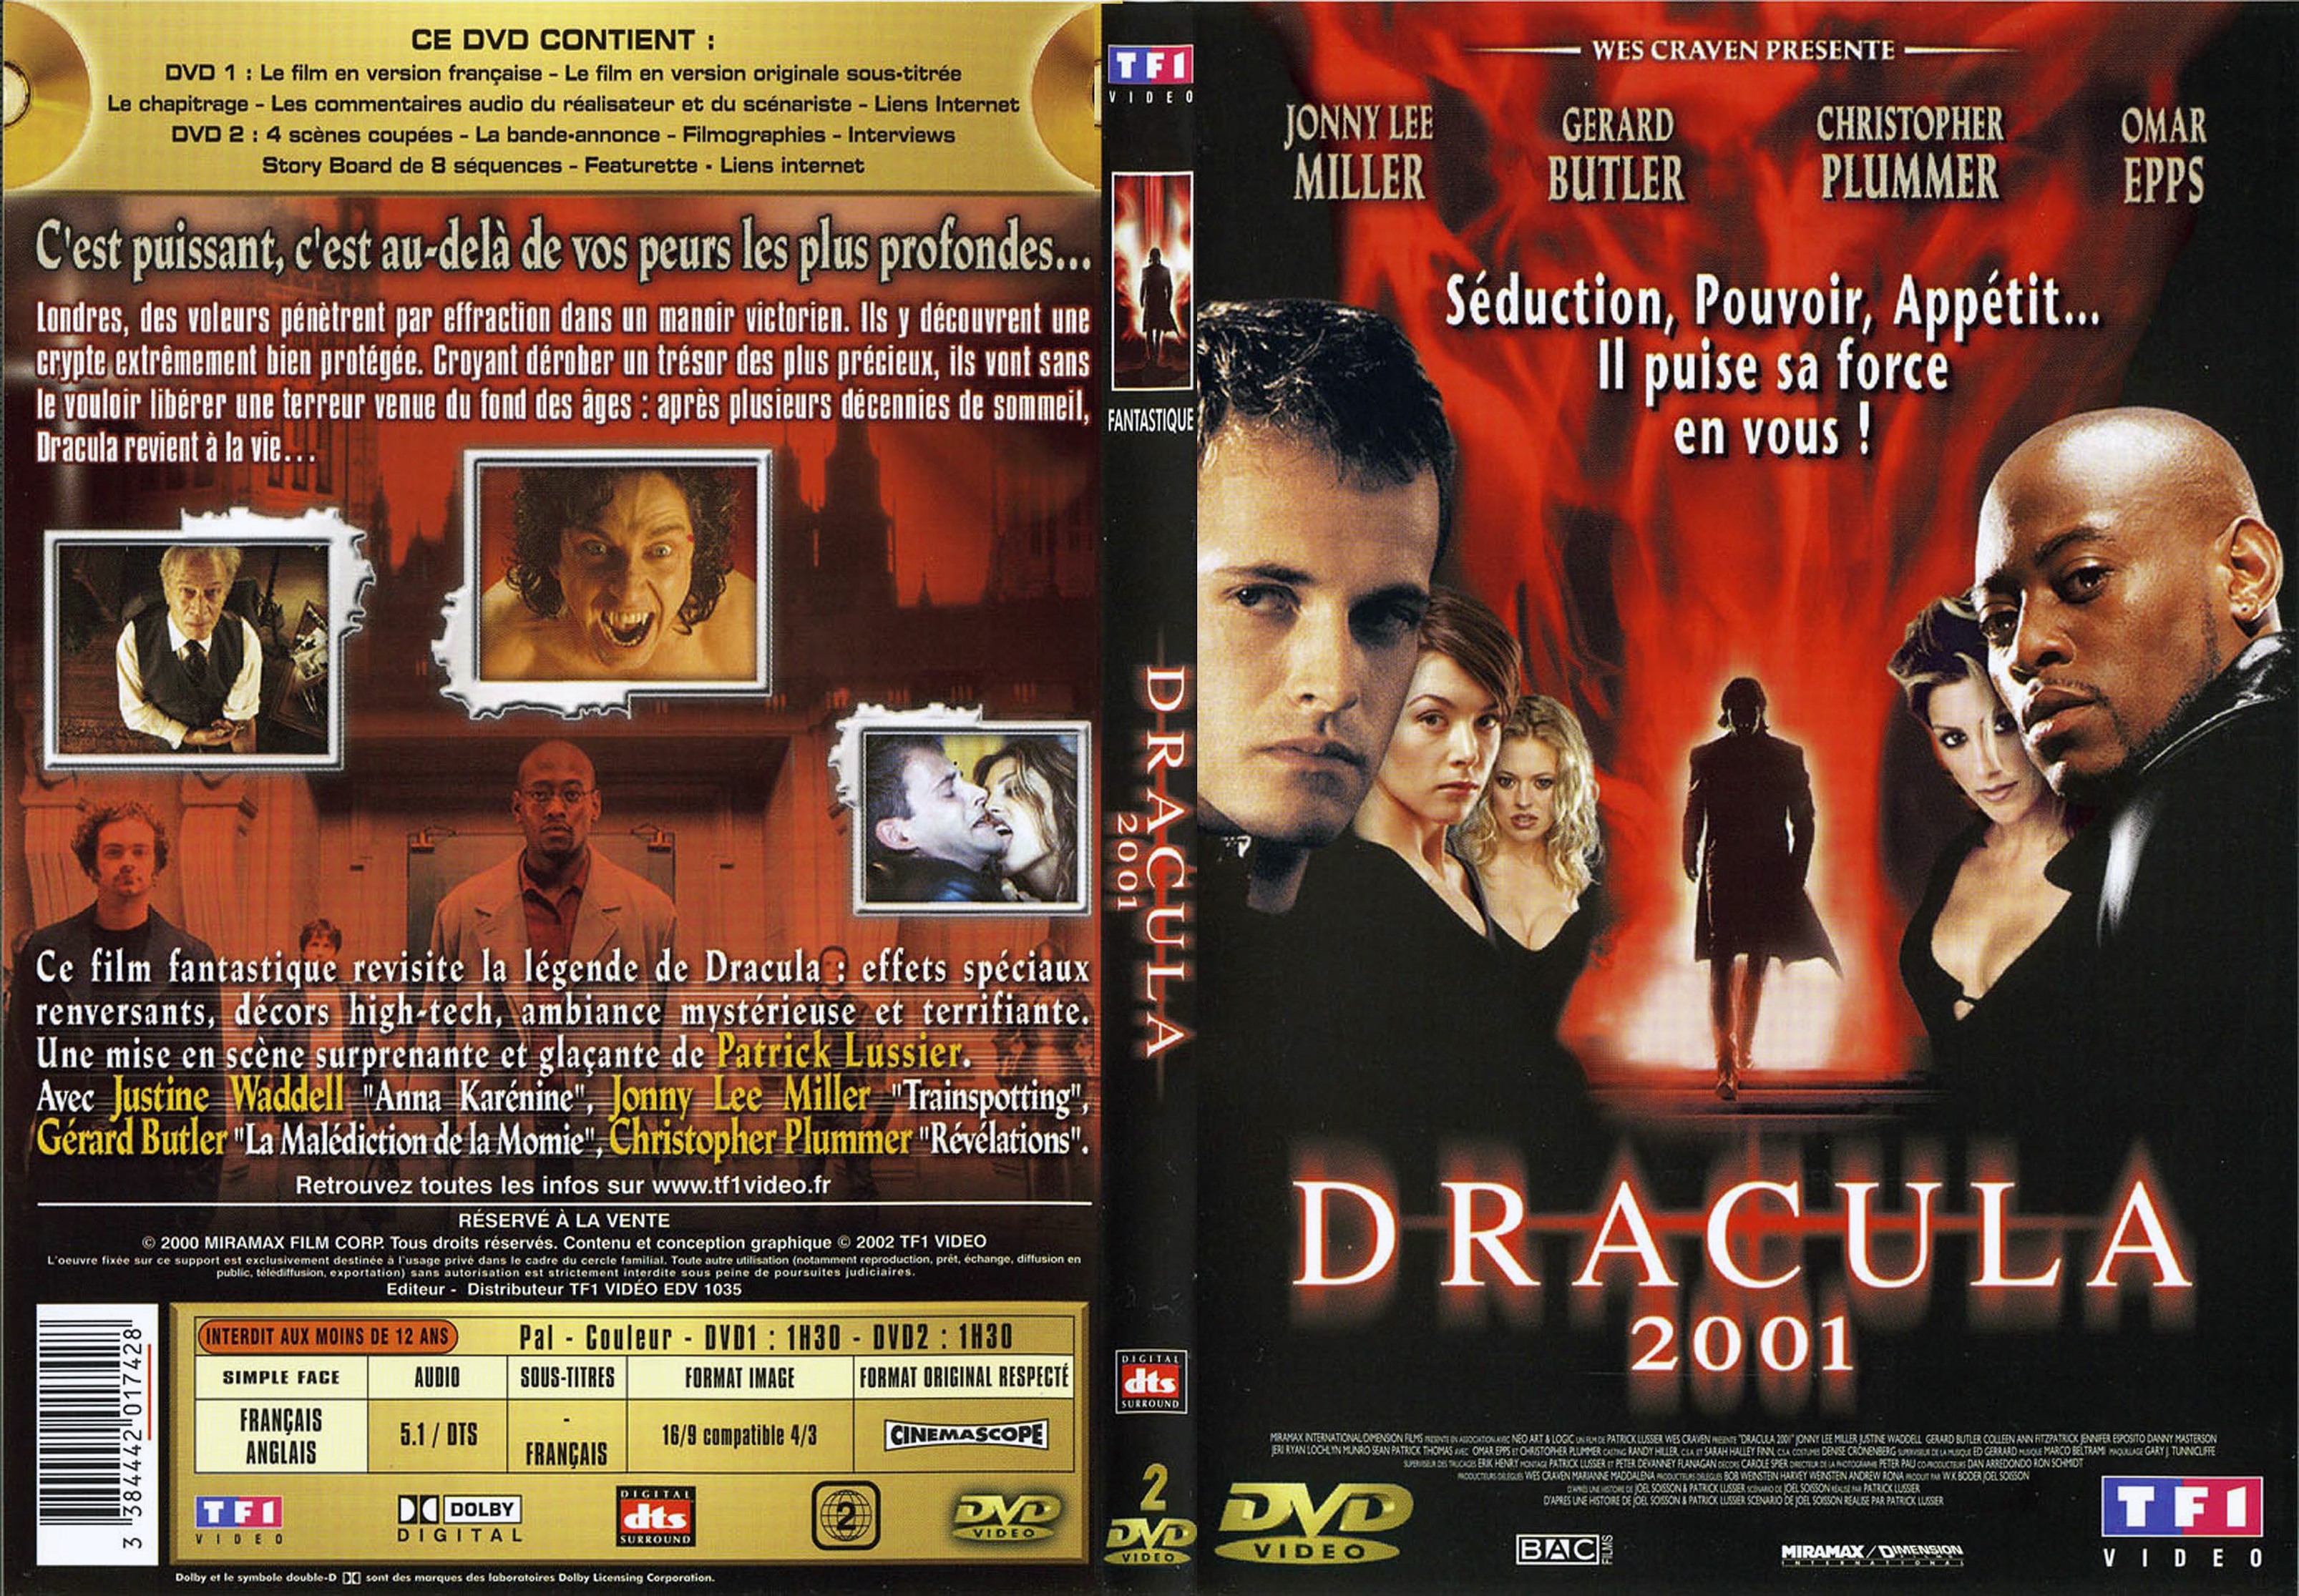 Jaquette DVD Dracula 2001 v2